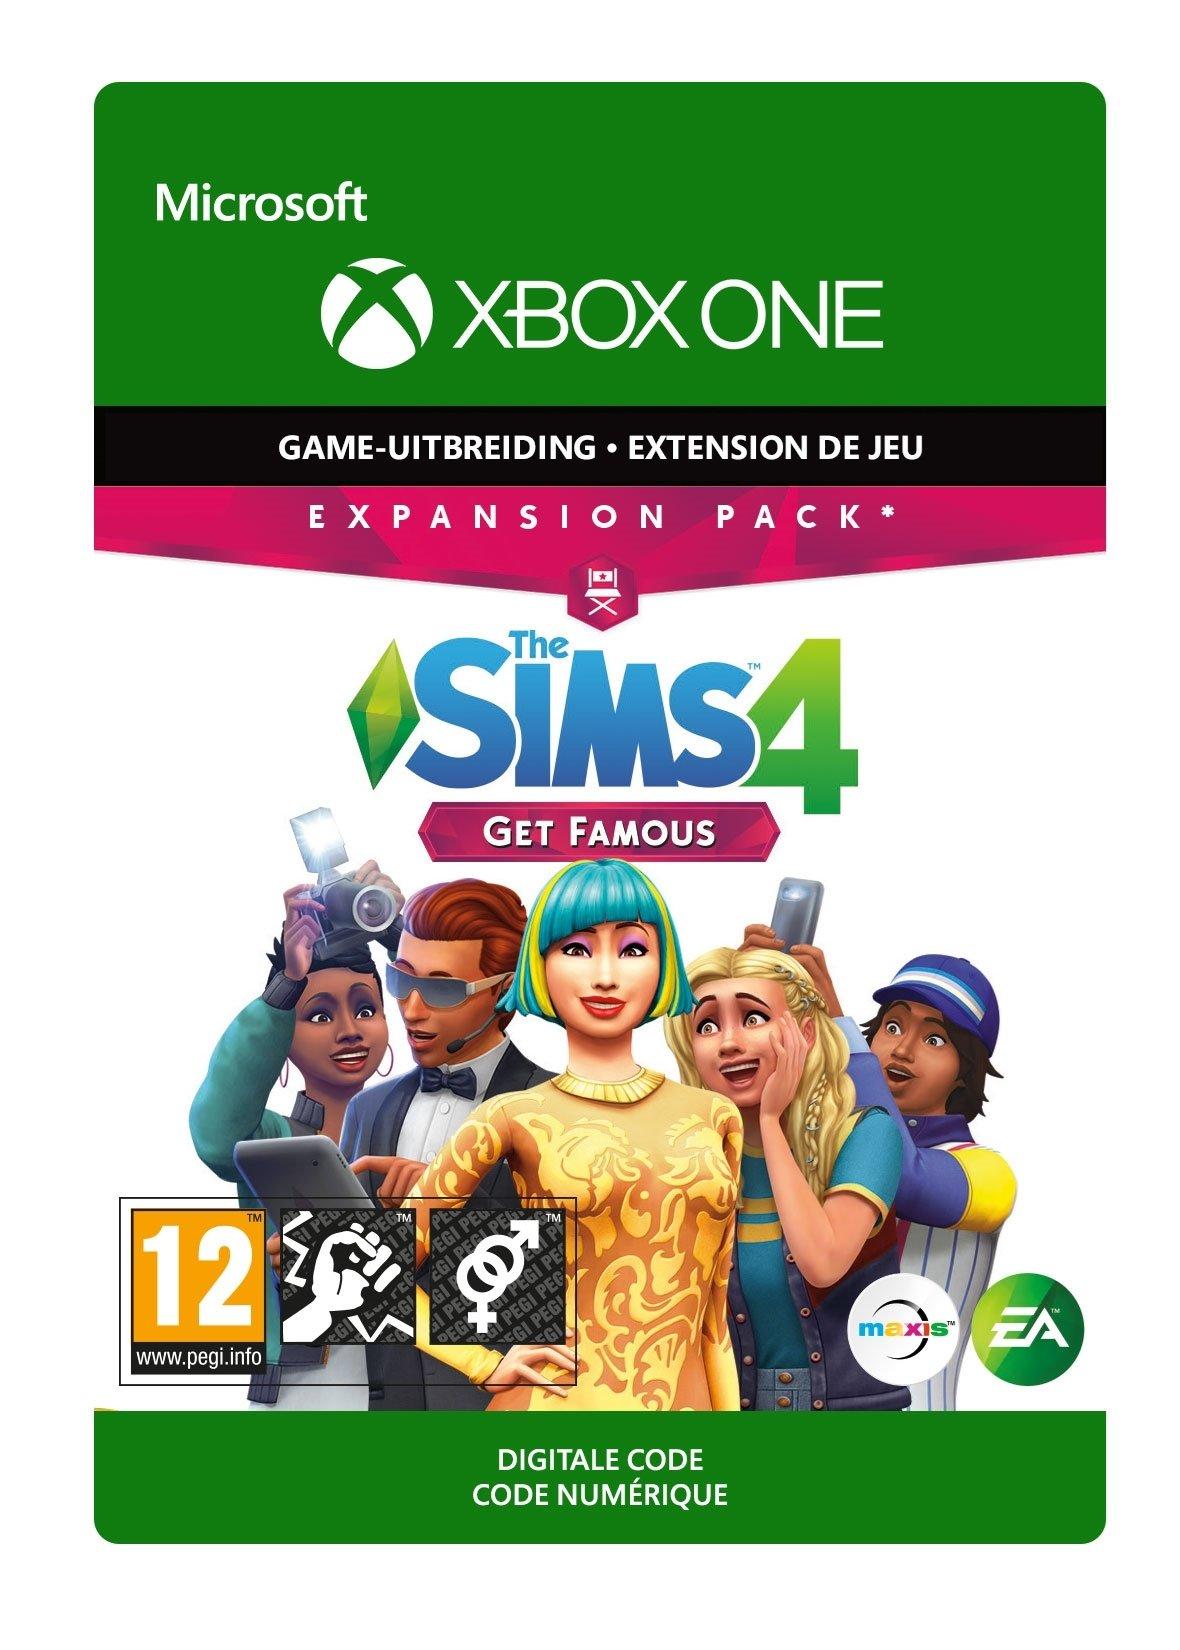 THE SIMS 4: GET FAMOUS - Xbox One - Add-on | 7D4-00286 (f3749205-c0ed-844a-a0e2-f8cf2832b938)